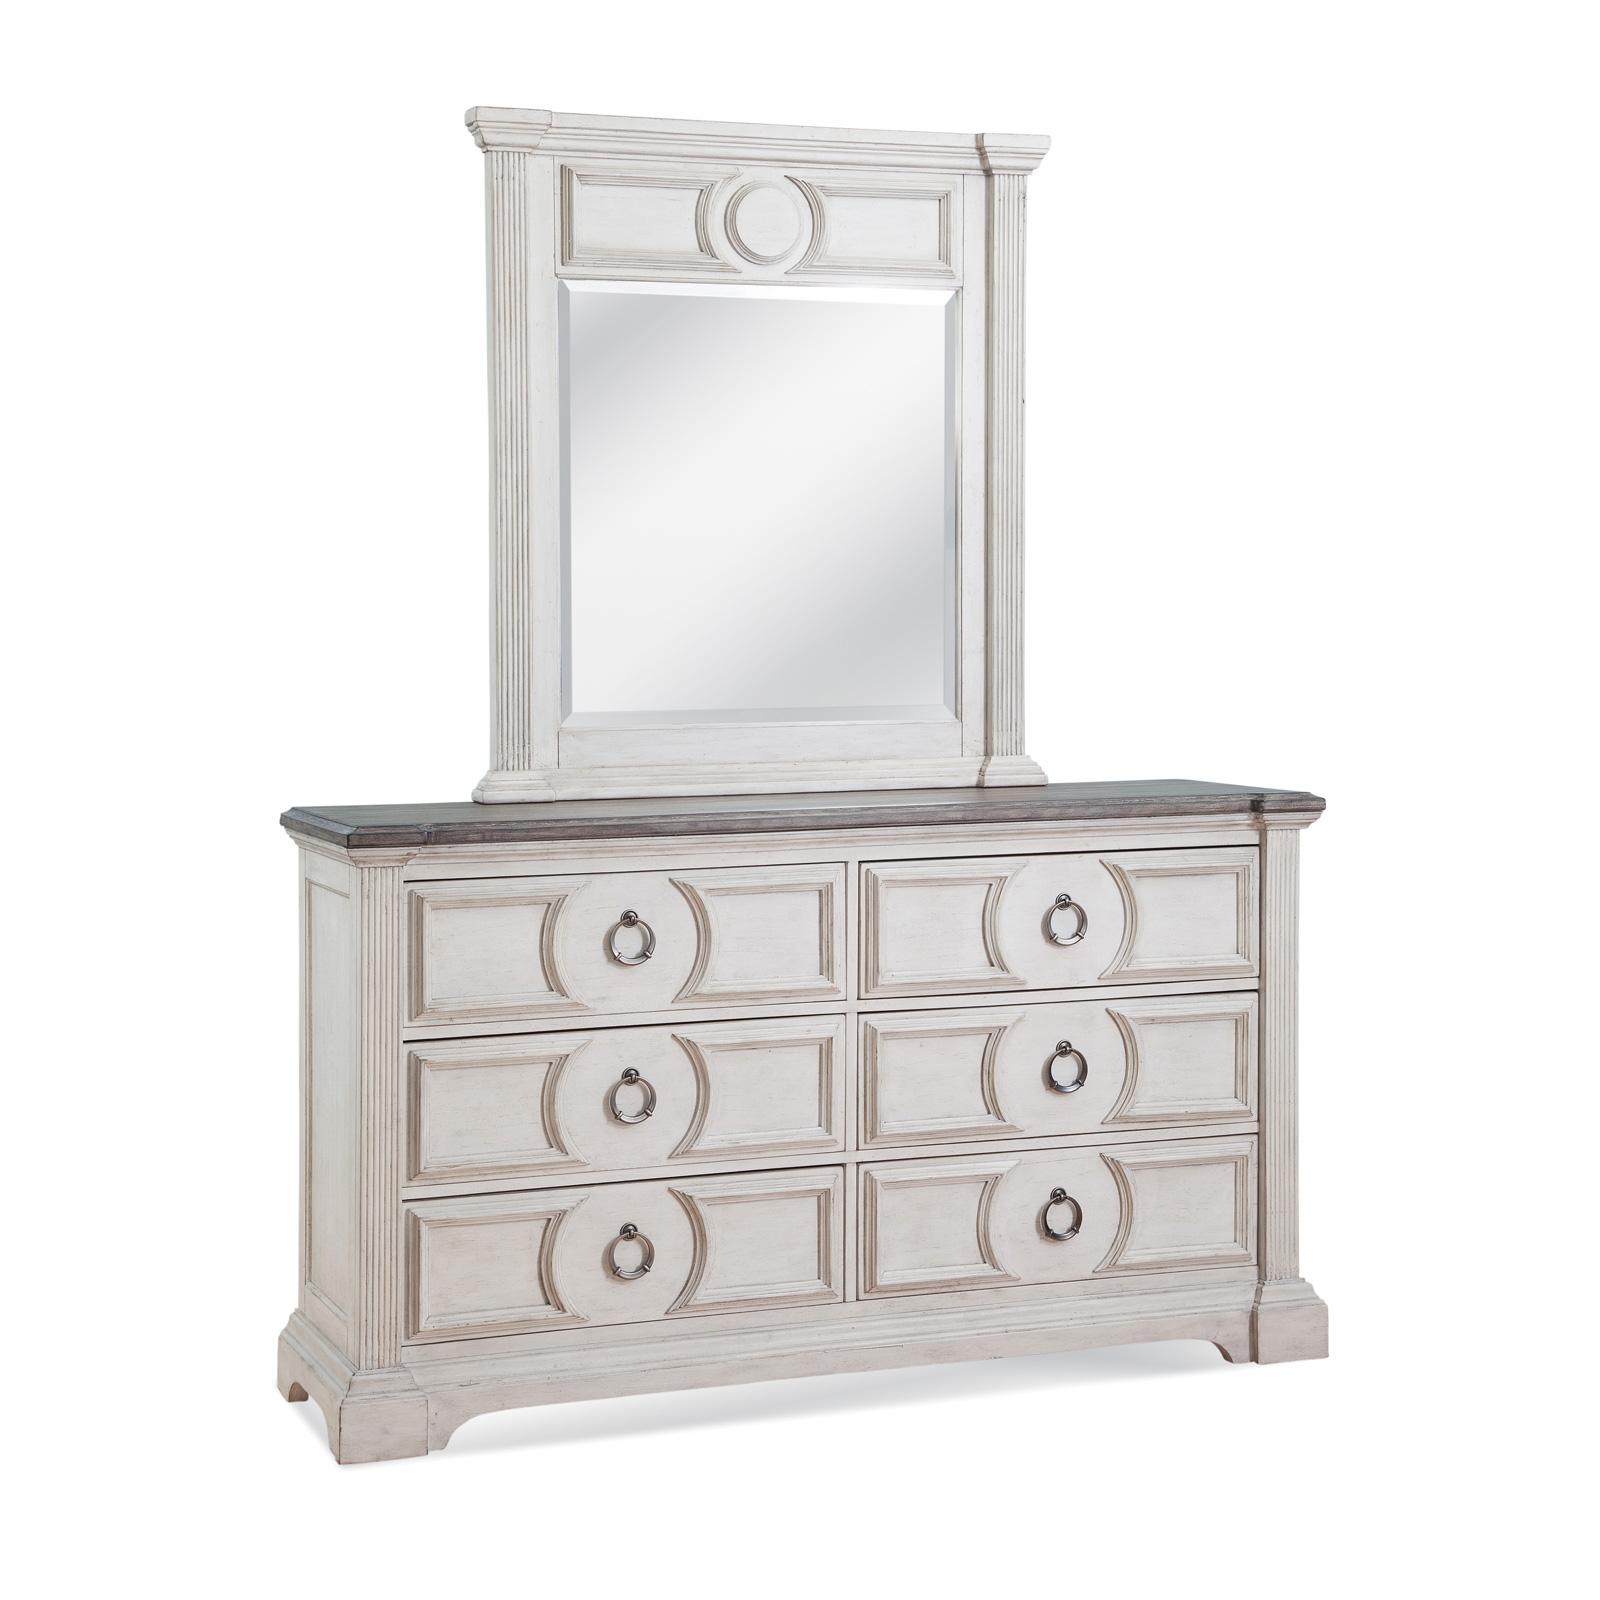 Cottage Dresser With Mirror BRIGHTEN 9410-TDLM in Antique White 